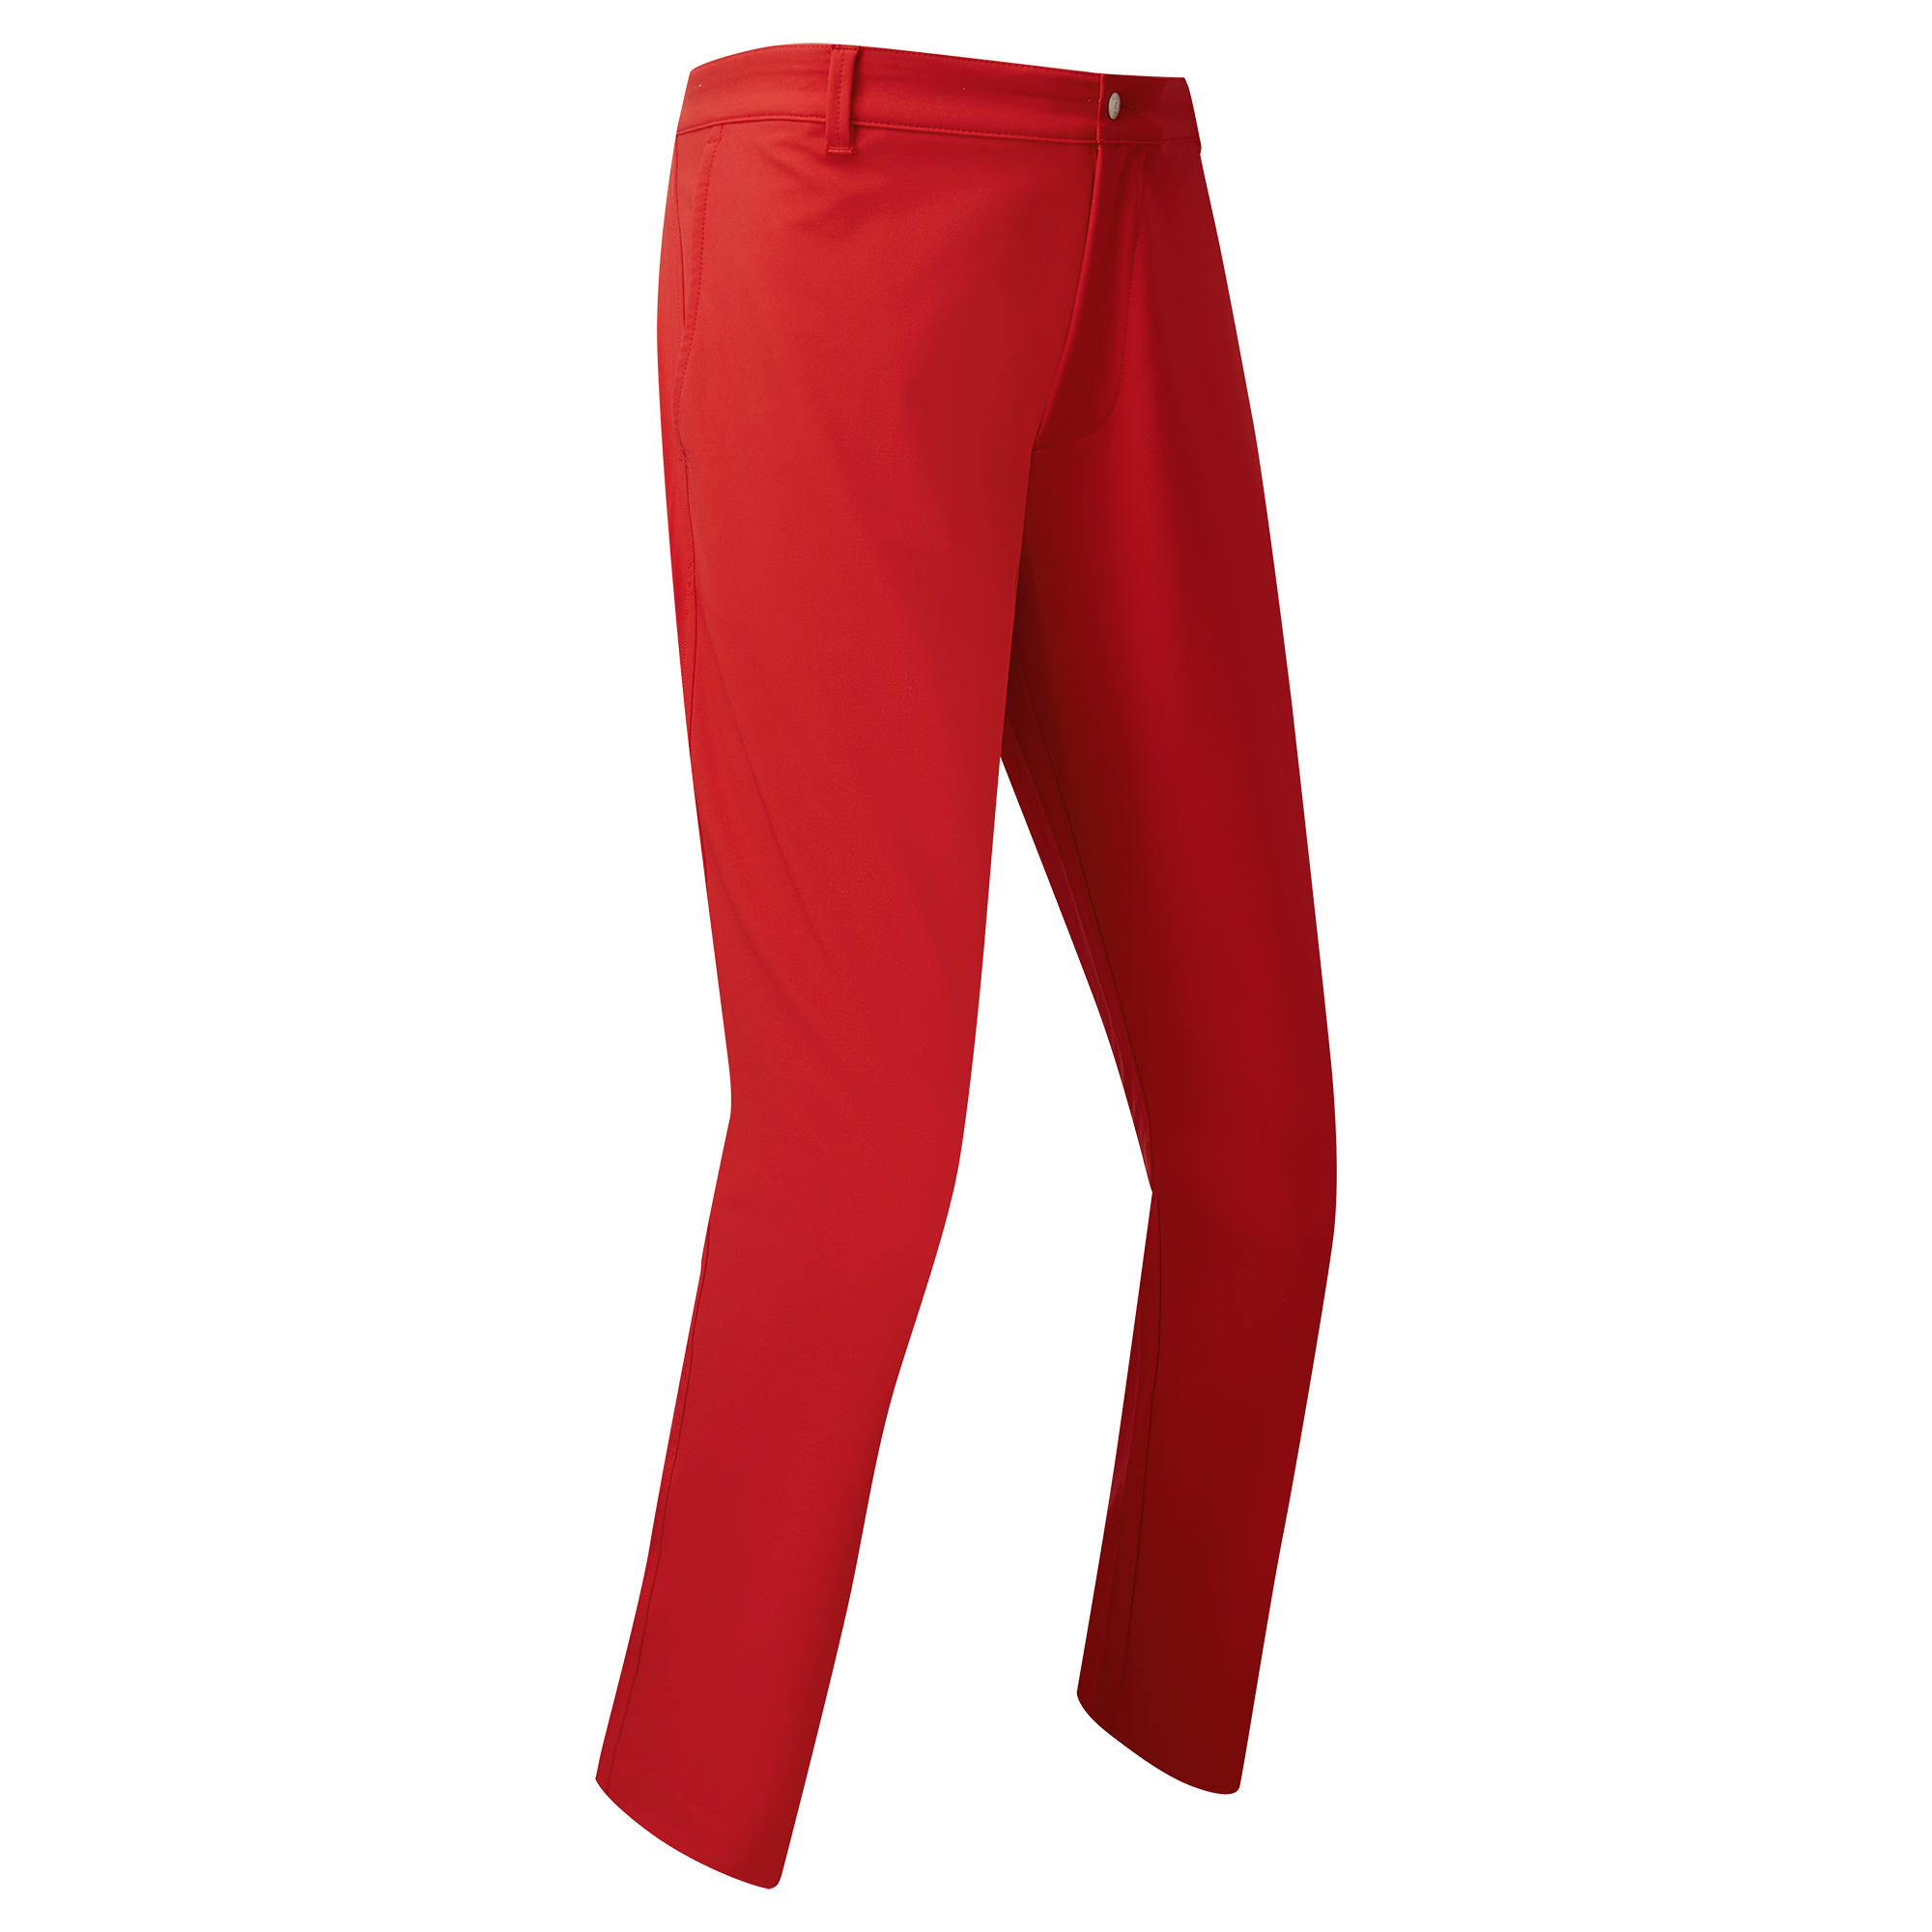 FootJoy Performance Tapered Fit pánské golfové kalhoty, červené